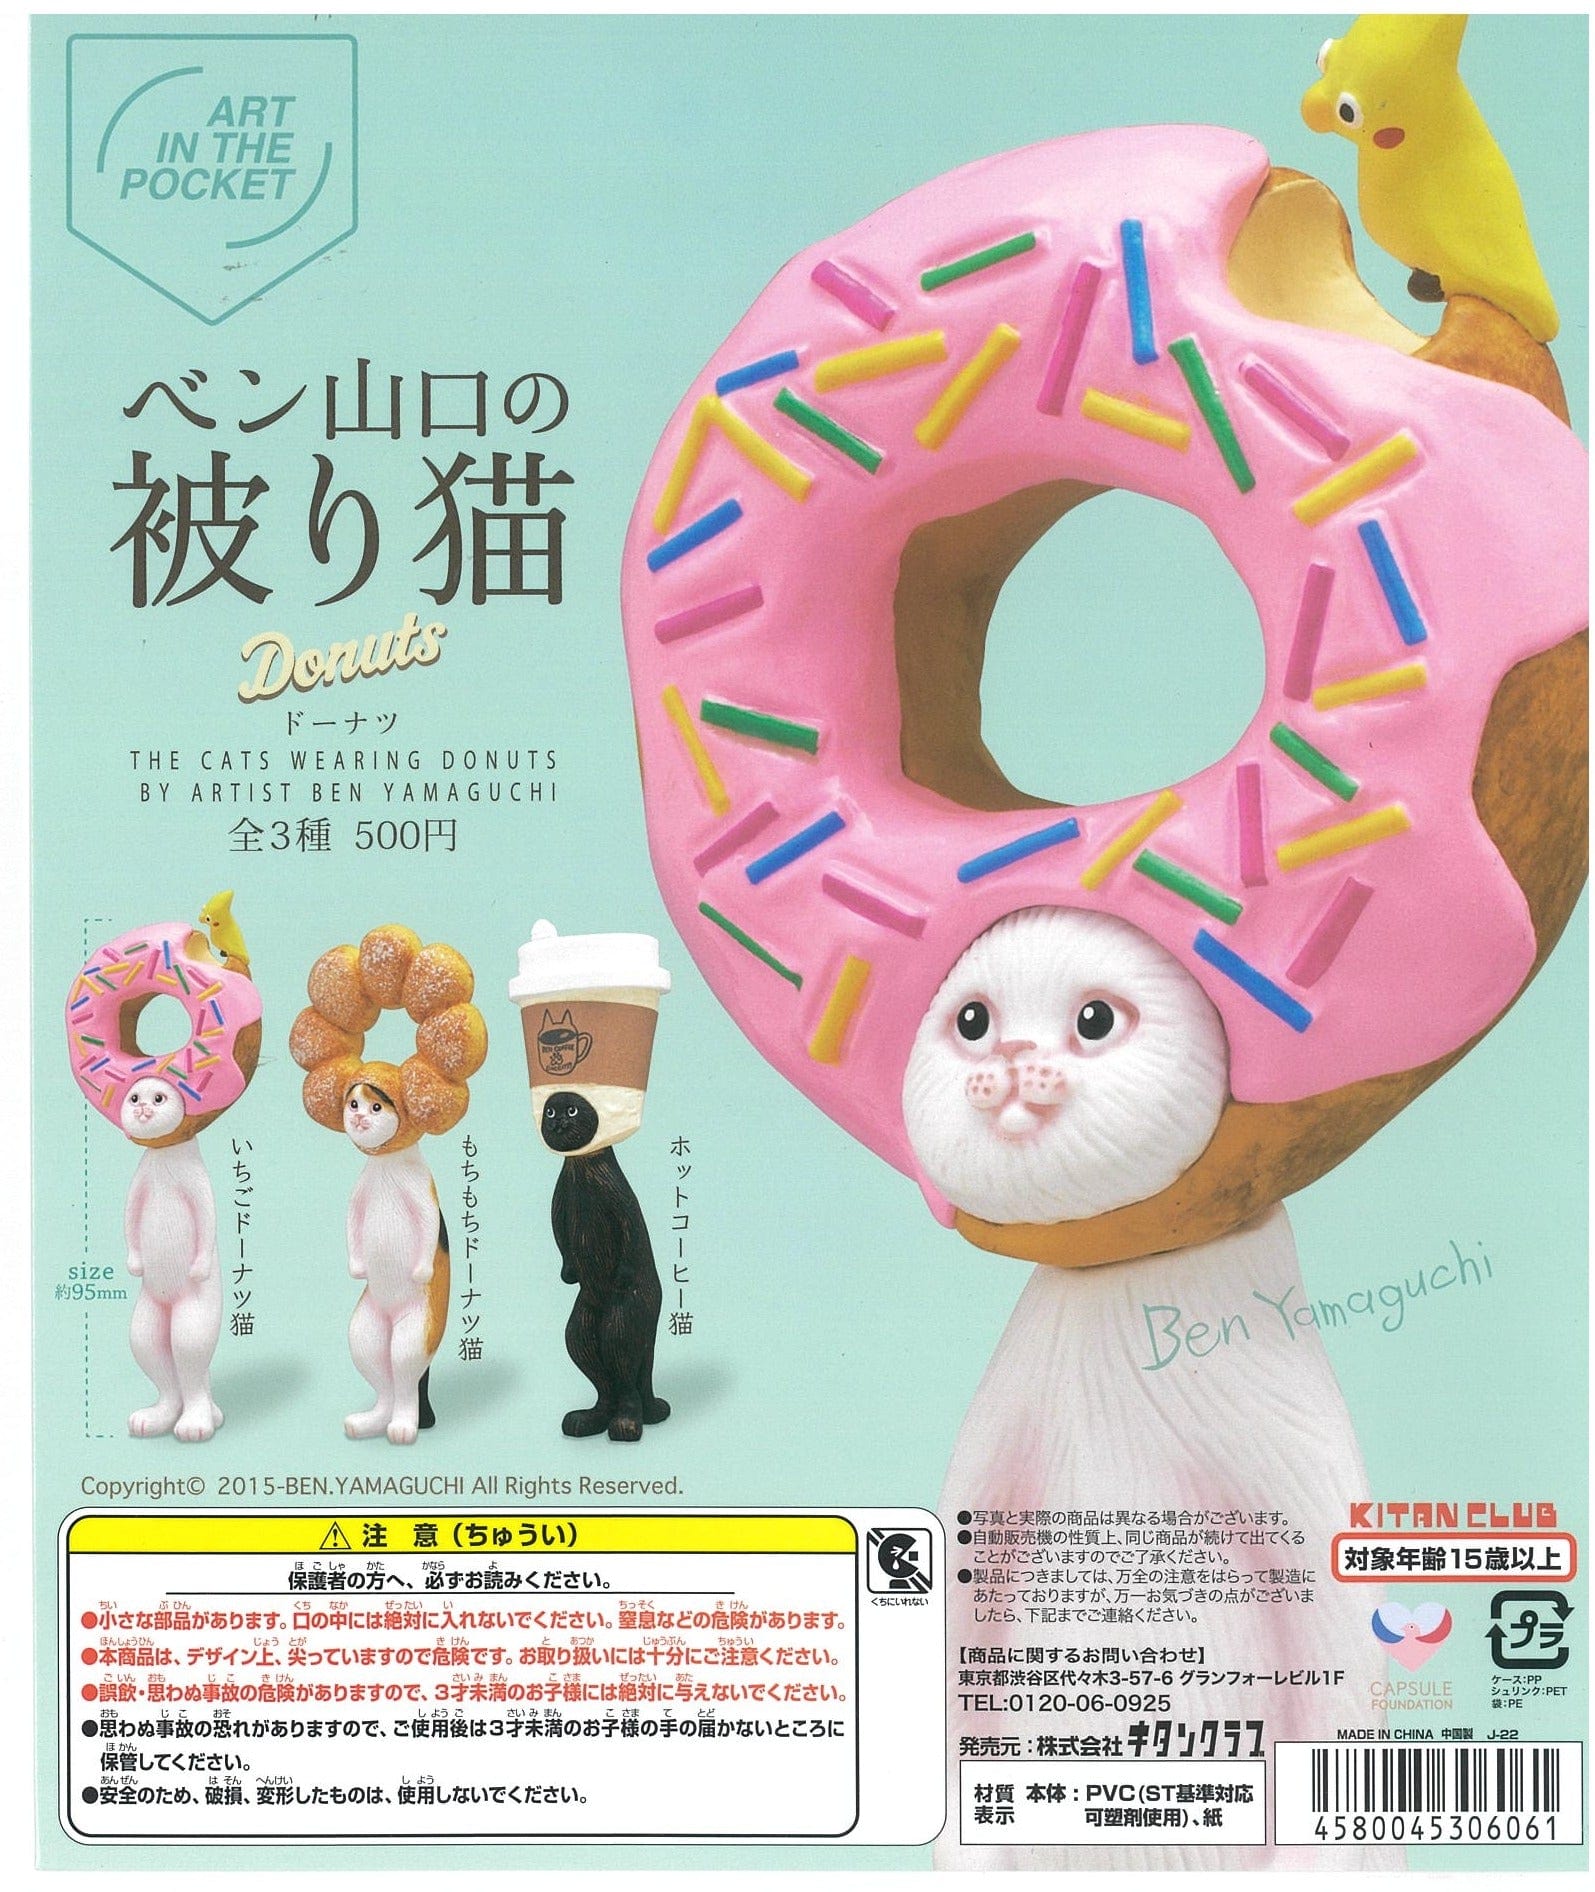 Kitan Club CP2003 Ben Yamaguchi Kaburi Cat -Donut-